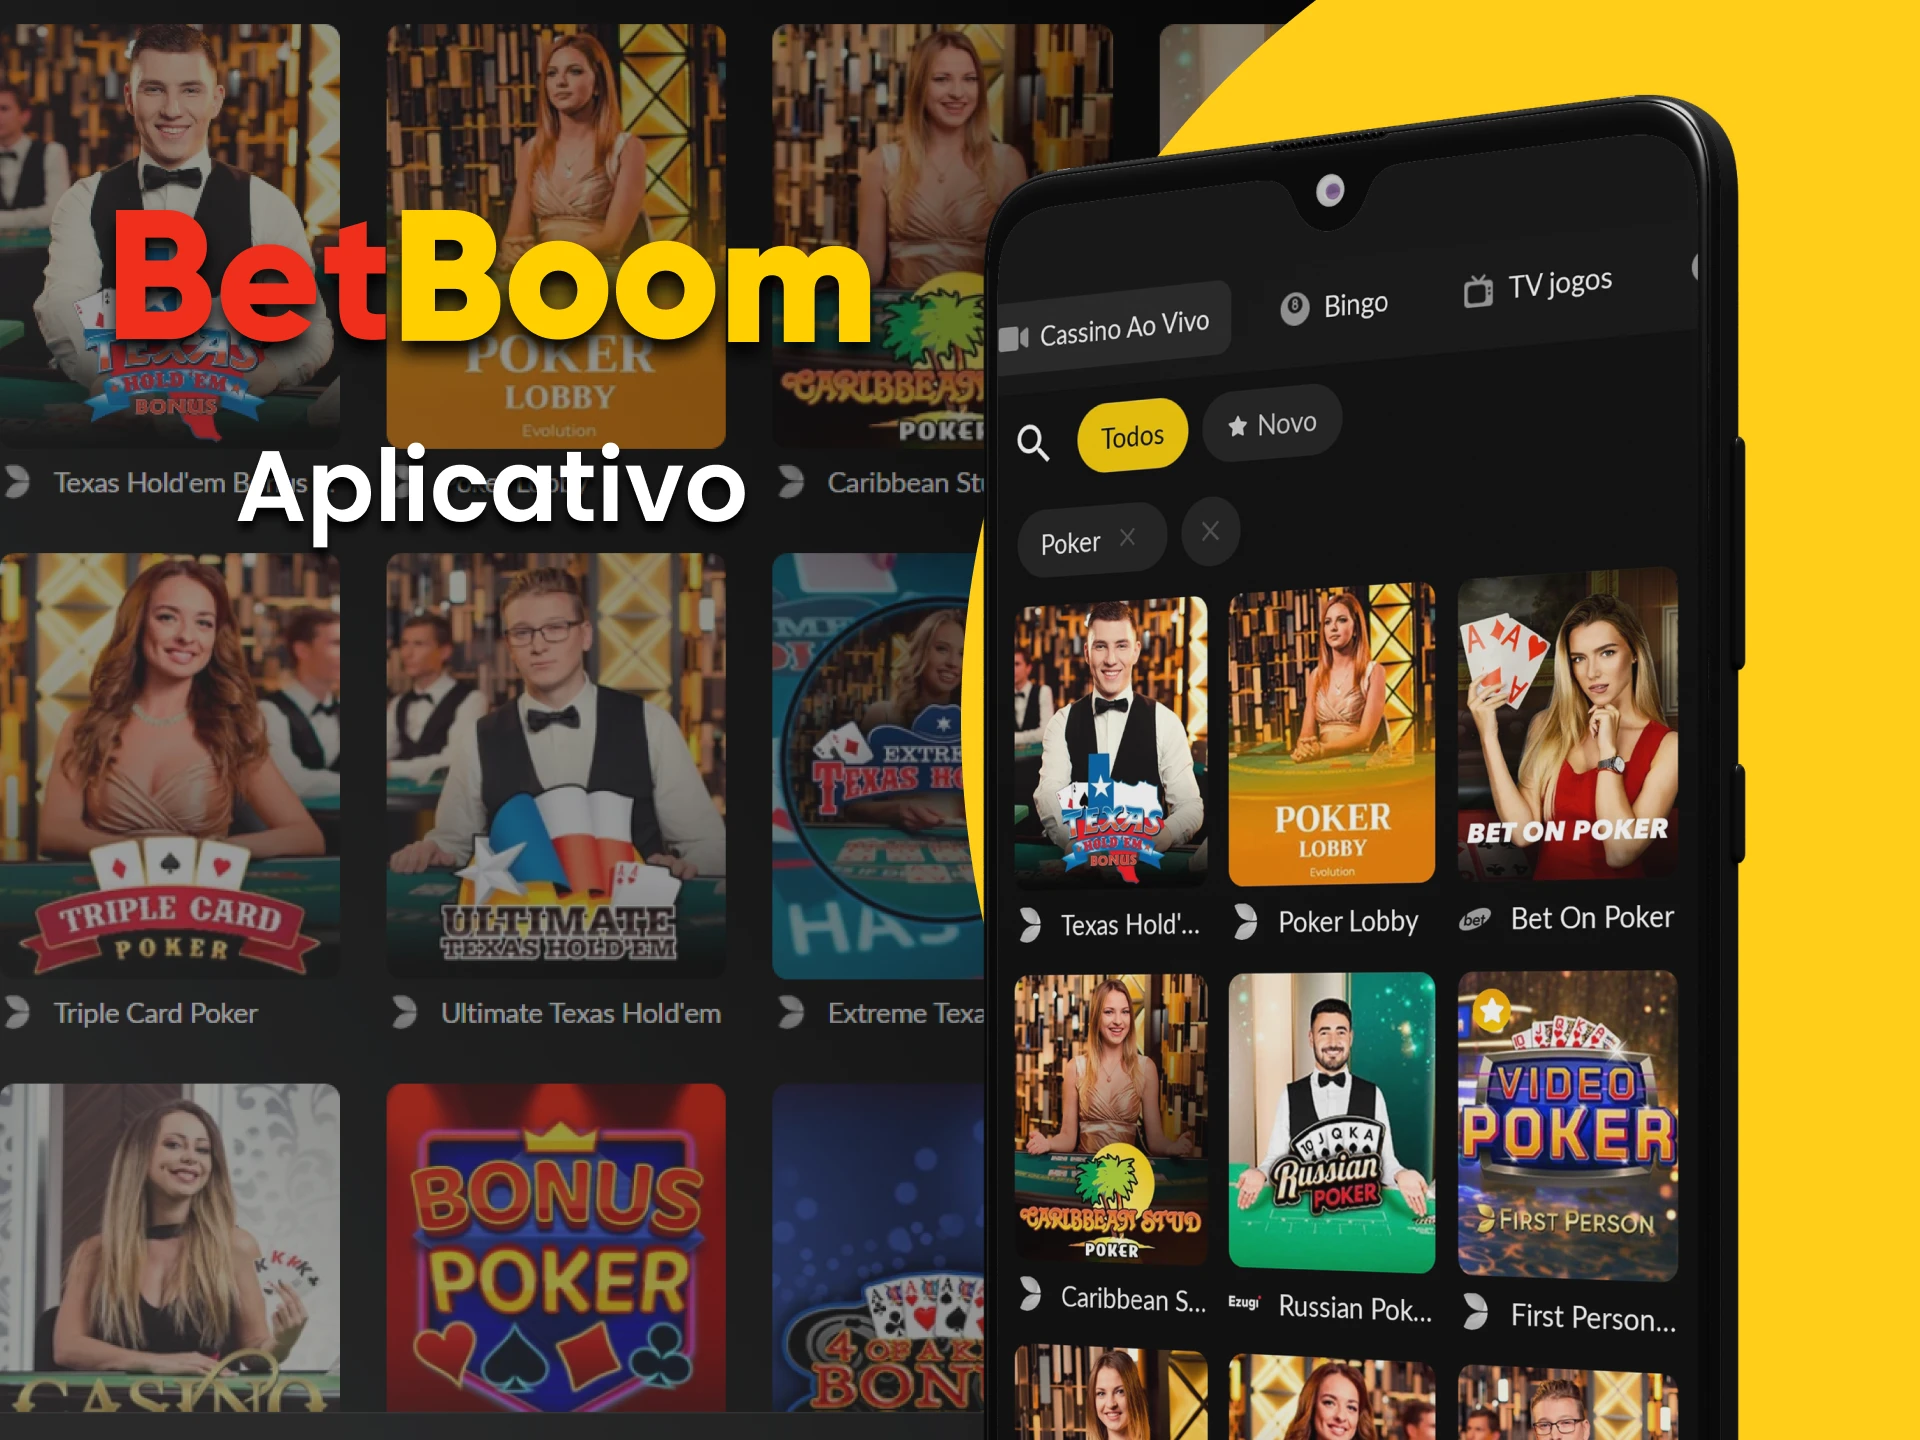 Para jogar pôquer, escolha o aplicativo BetBoom.